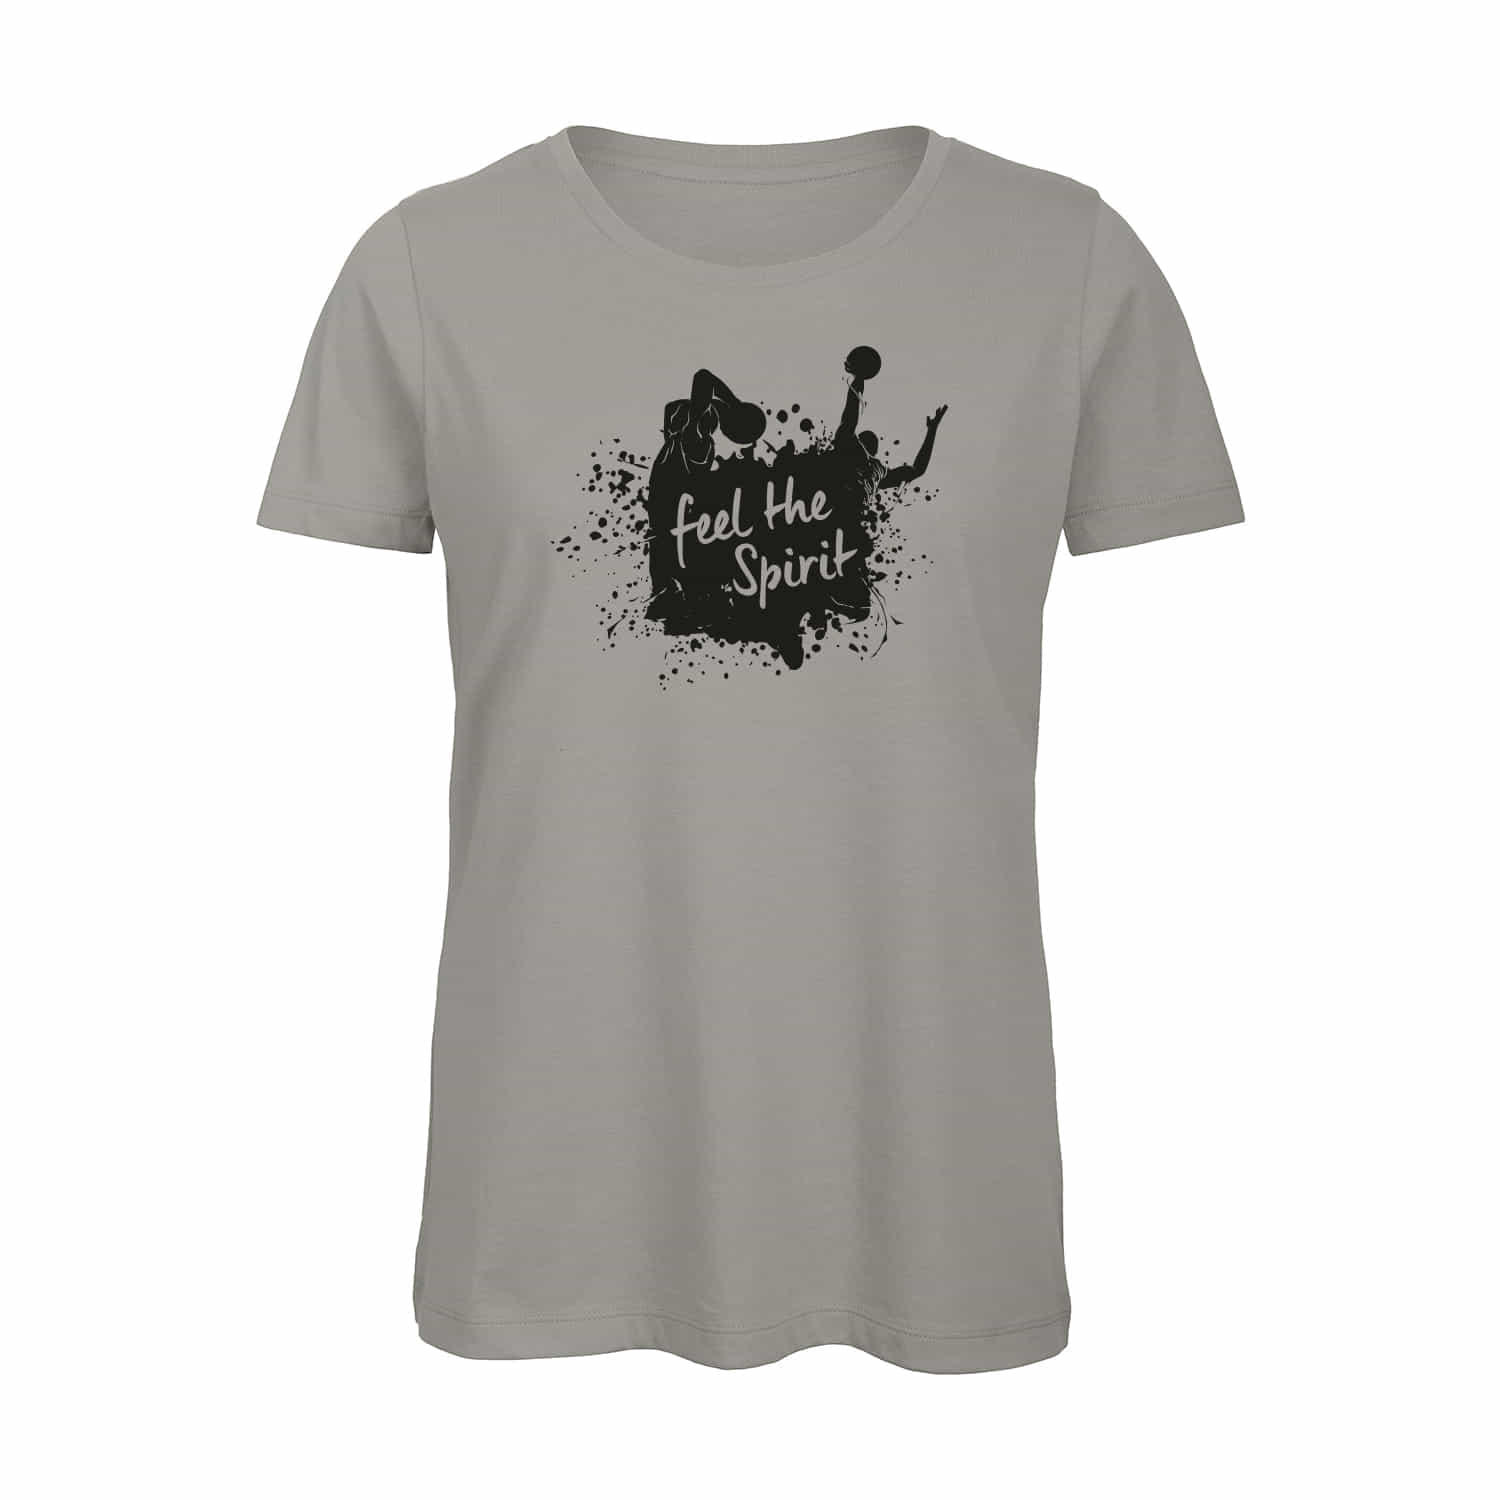 Damen T-Shirt "Feel the Spirit"